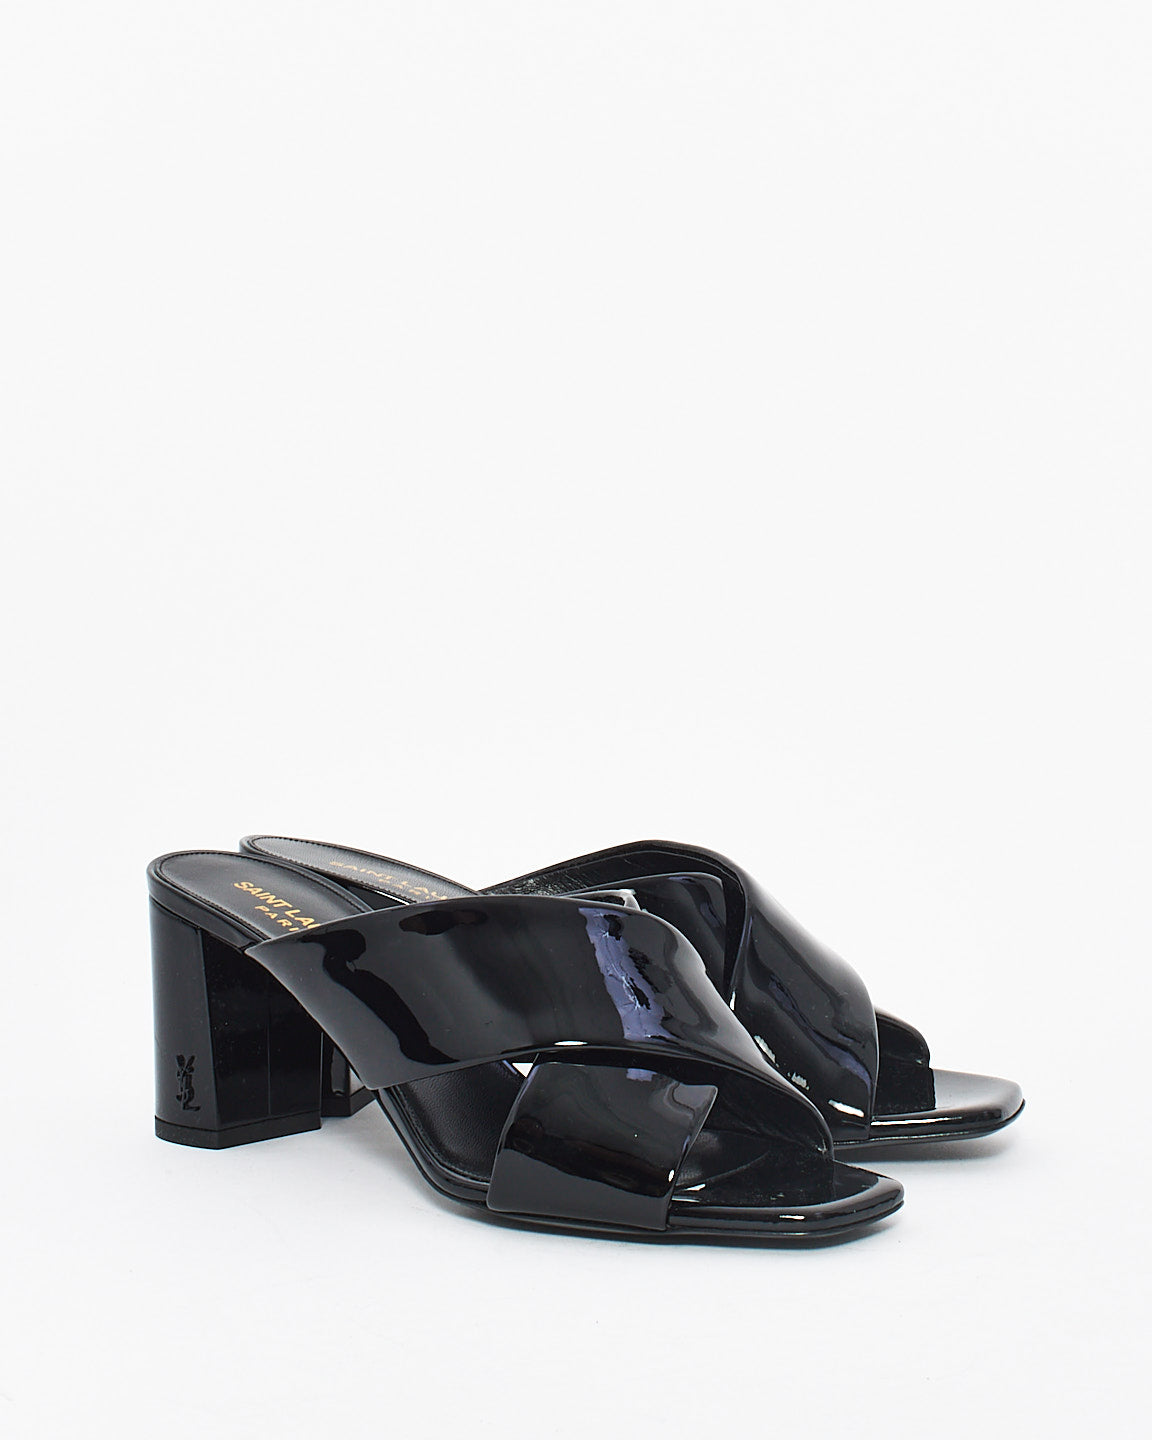 Saint Laurent Black Patent Loulou Leather Mule Heeled Sandals - 38.5